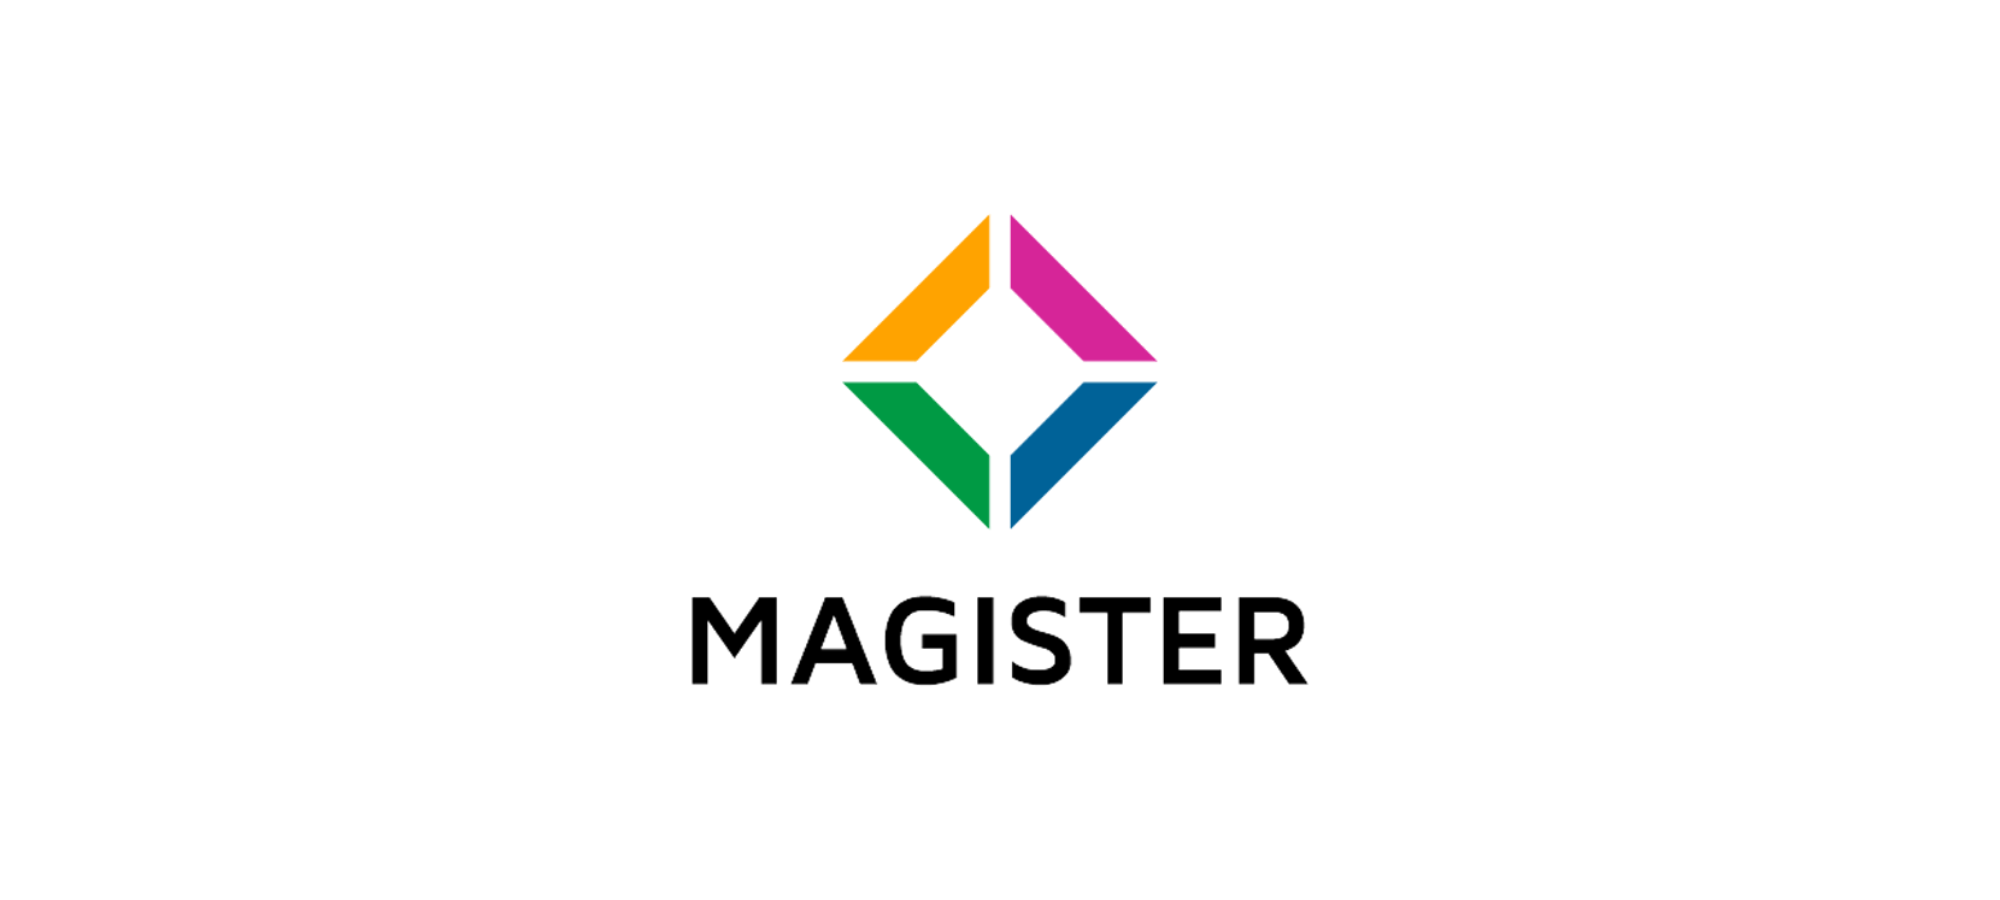 Magister împlinește 20 de ani de inovație tehnologică în retail